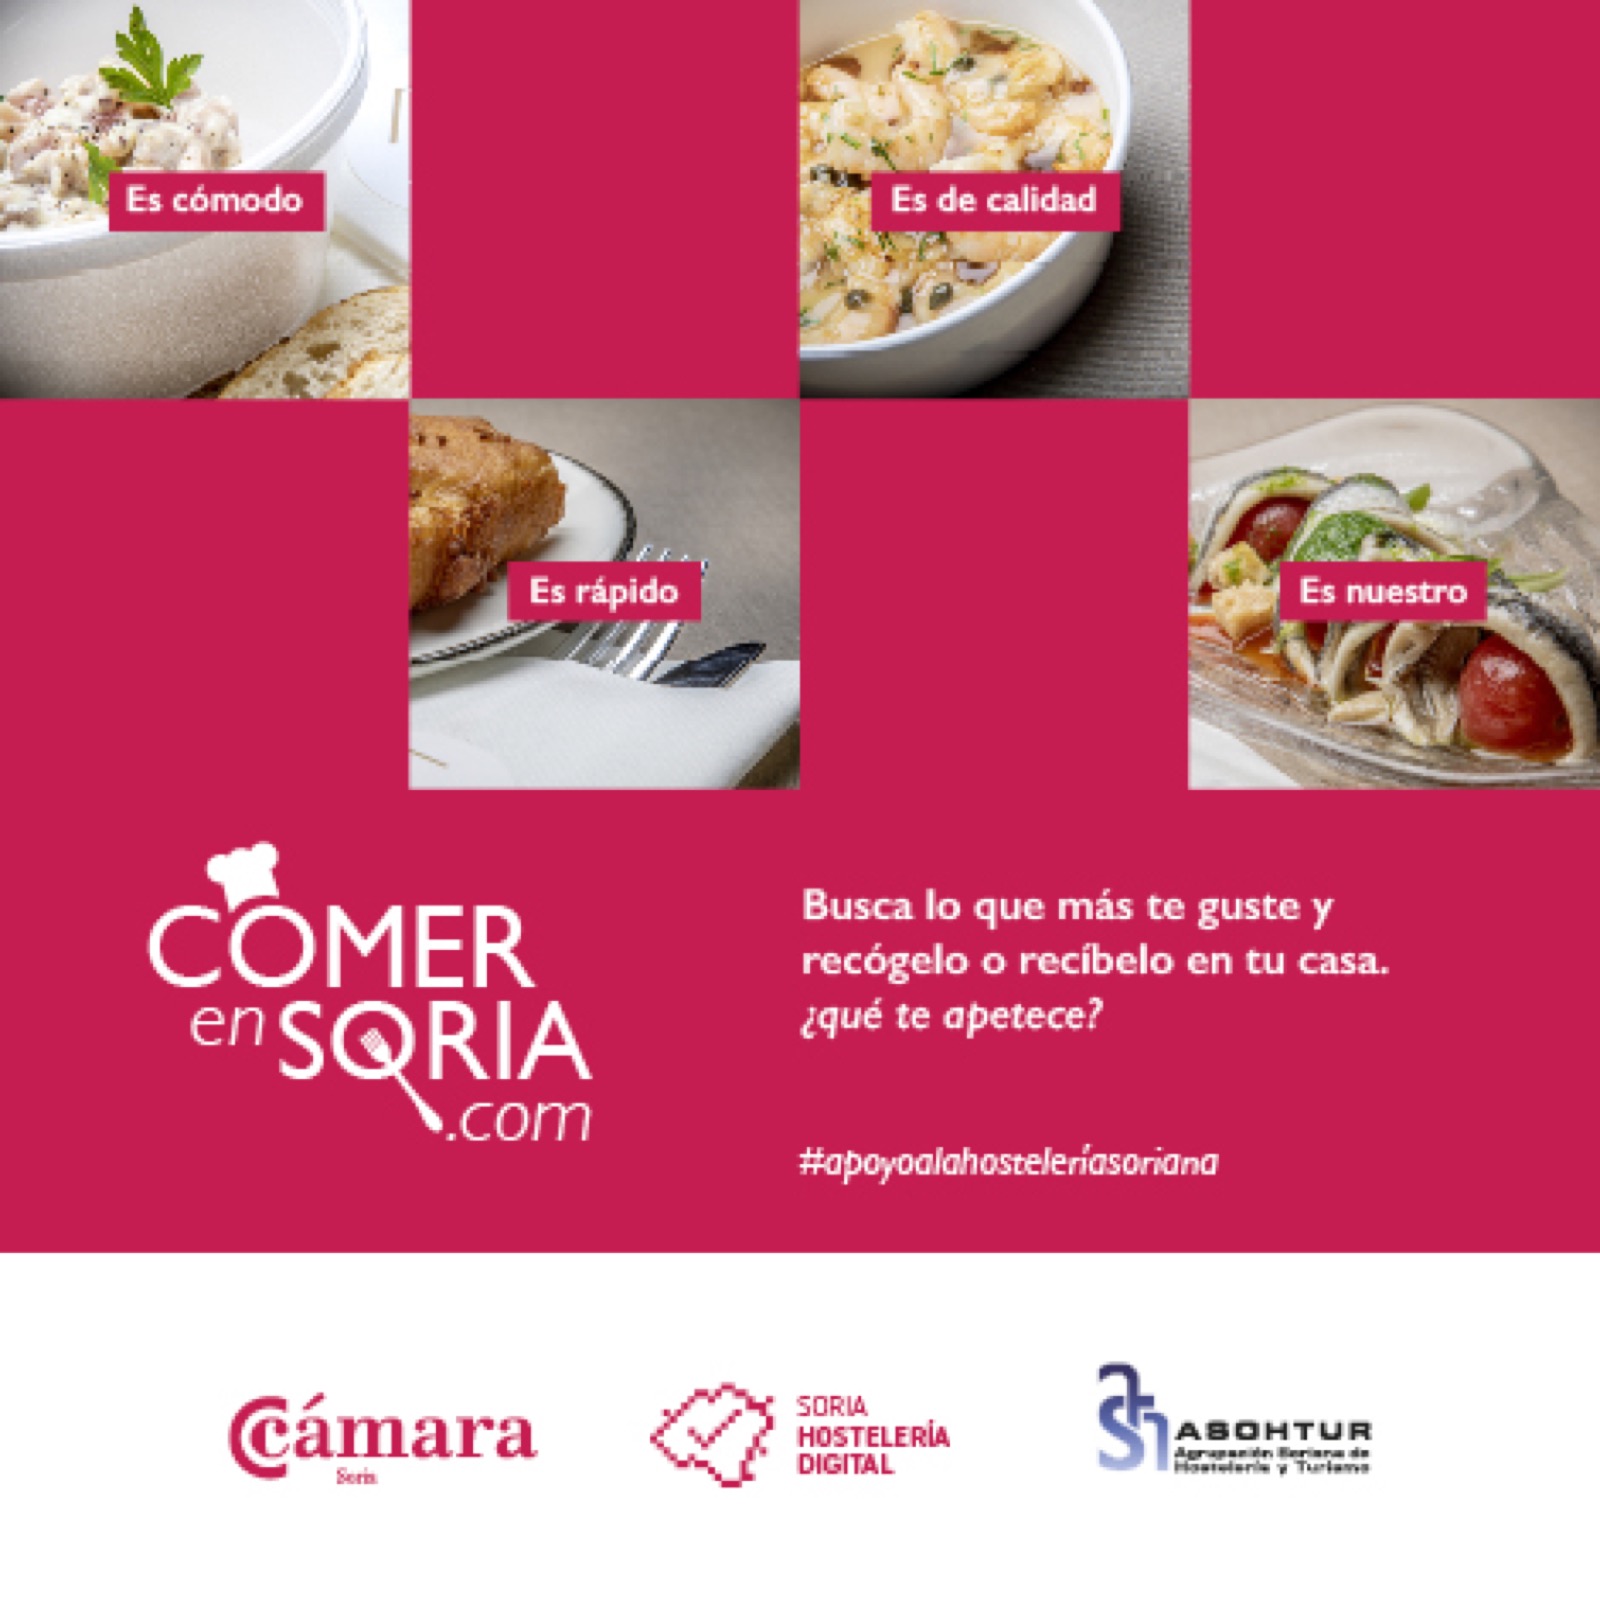 La web Comer en Soria recibe más de 6.300 visitas en sus primeros días activa y reúne ya a 34 bares y restaurantes